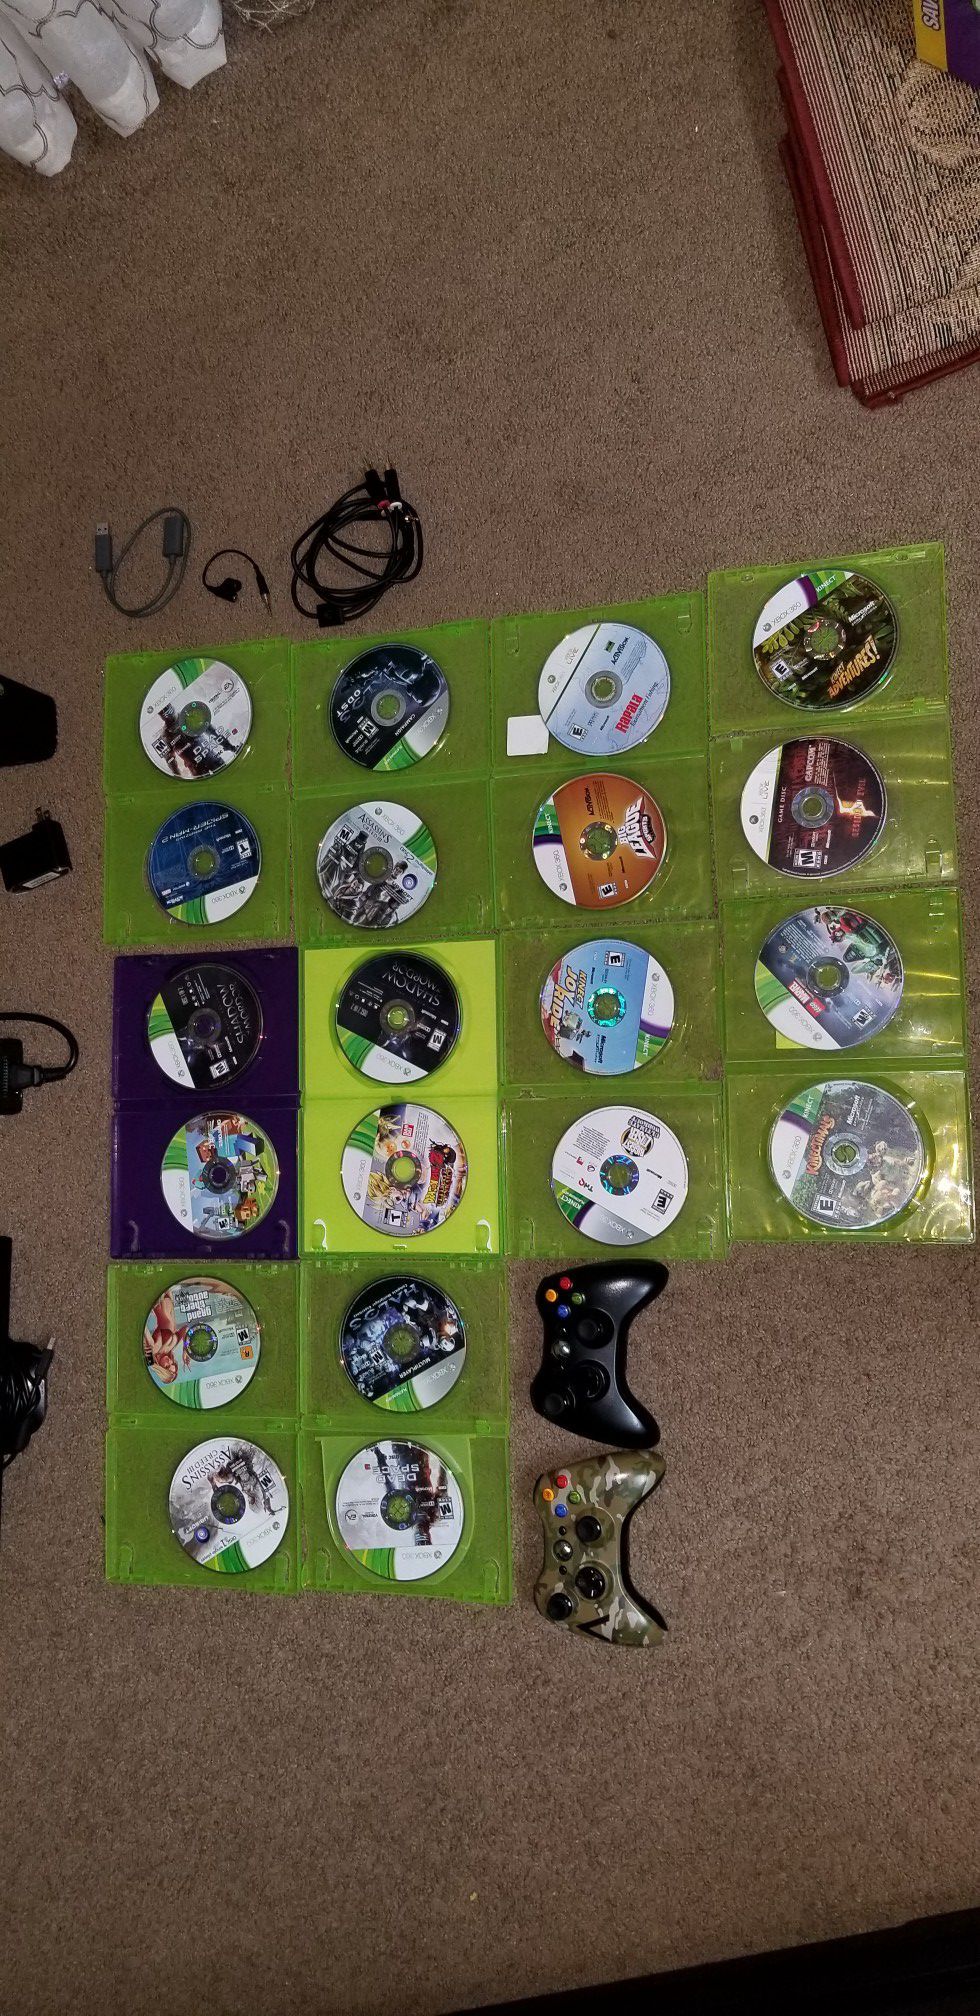 Xbox 360 with 20 games 2 Joysticks 2 headphones